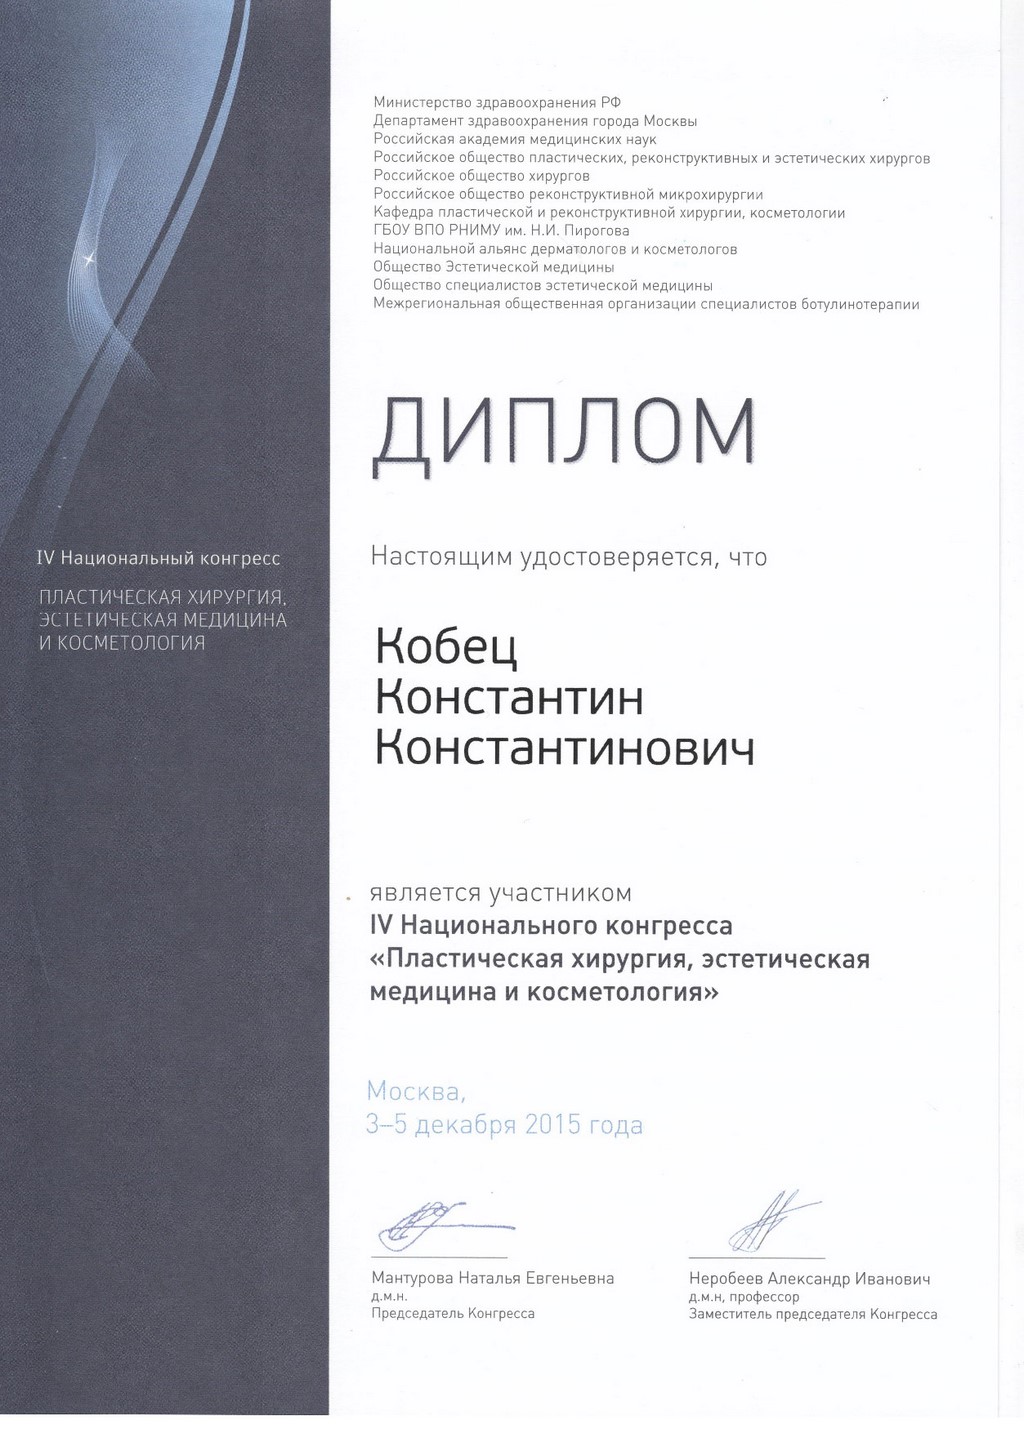 2015_12_3-5_Kobets_K_iv-nacionalnyi-kongress--plasticheskaya-hirurgiya--ehsteticheskaya-medicina-i-kosmetologiya.jpg